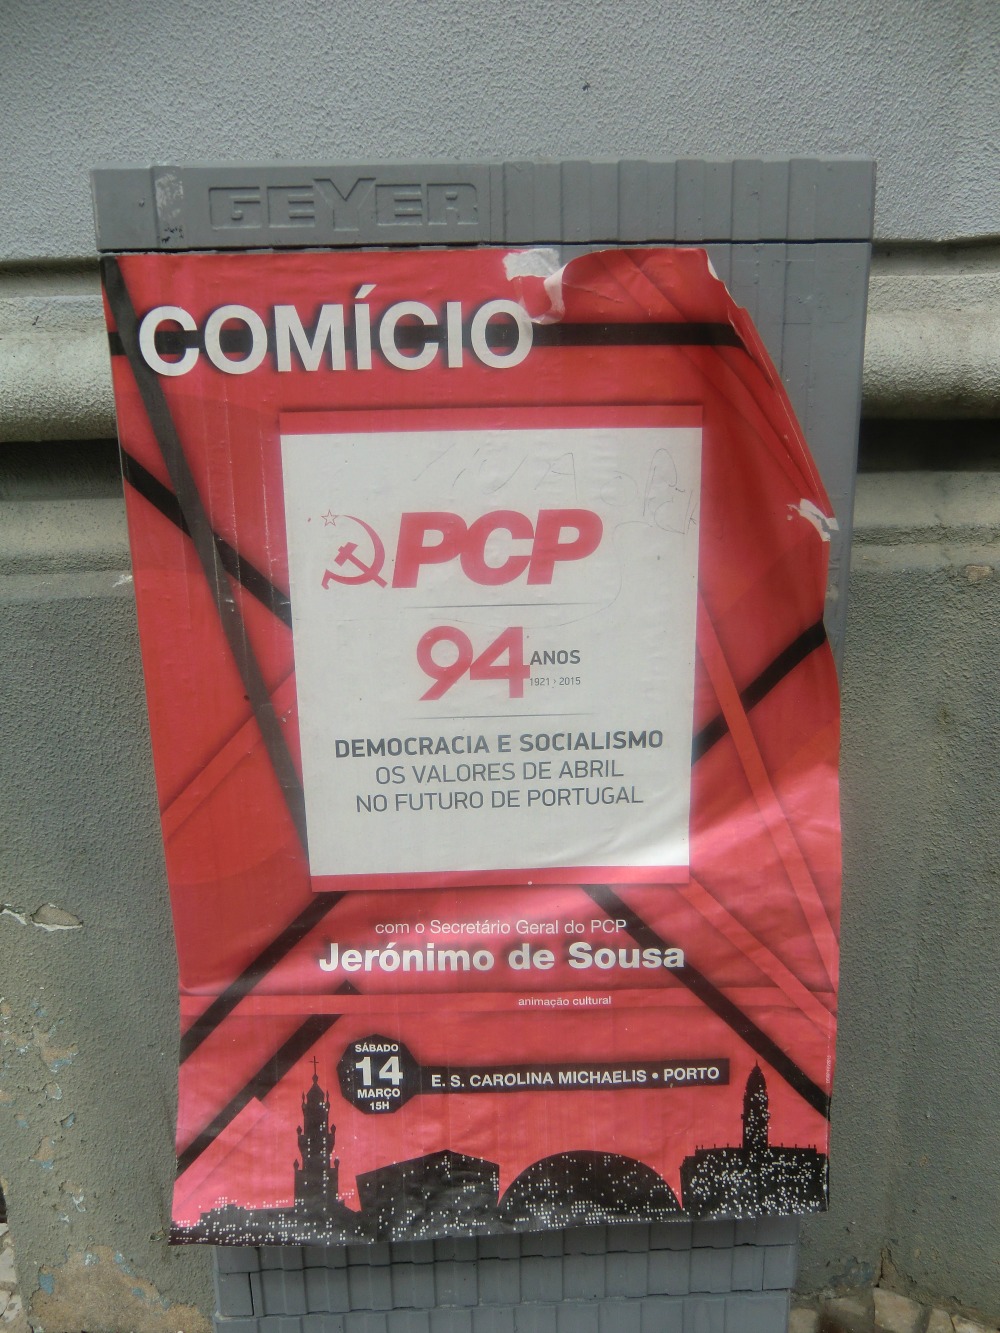 حزب کمونیست در پرتغال بسیار فعّال است